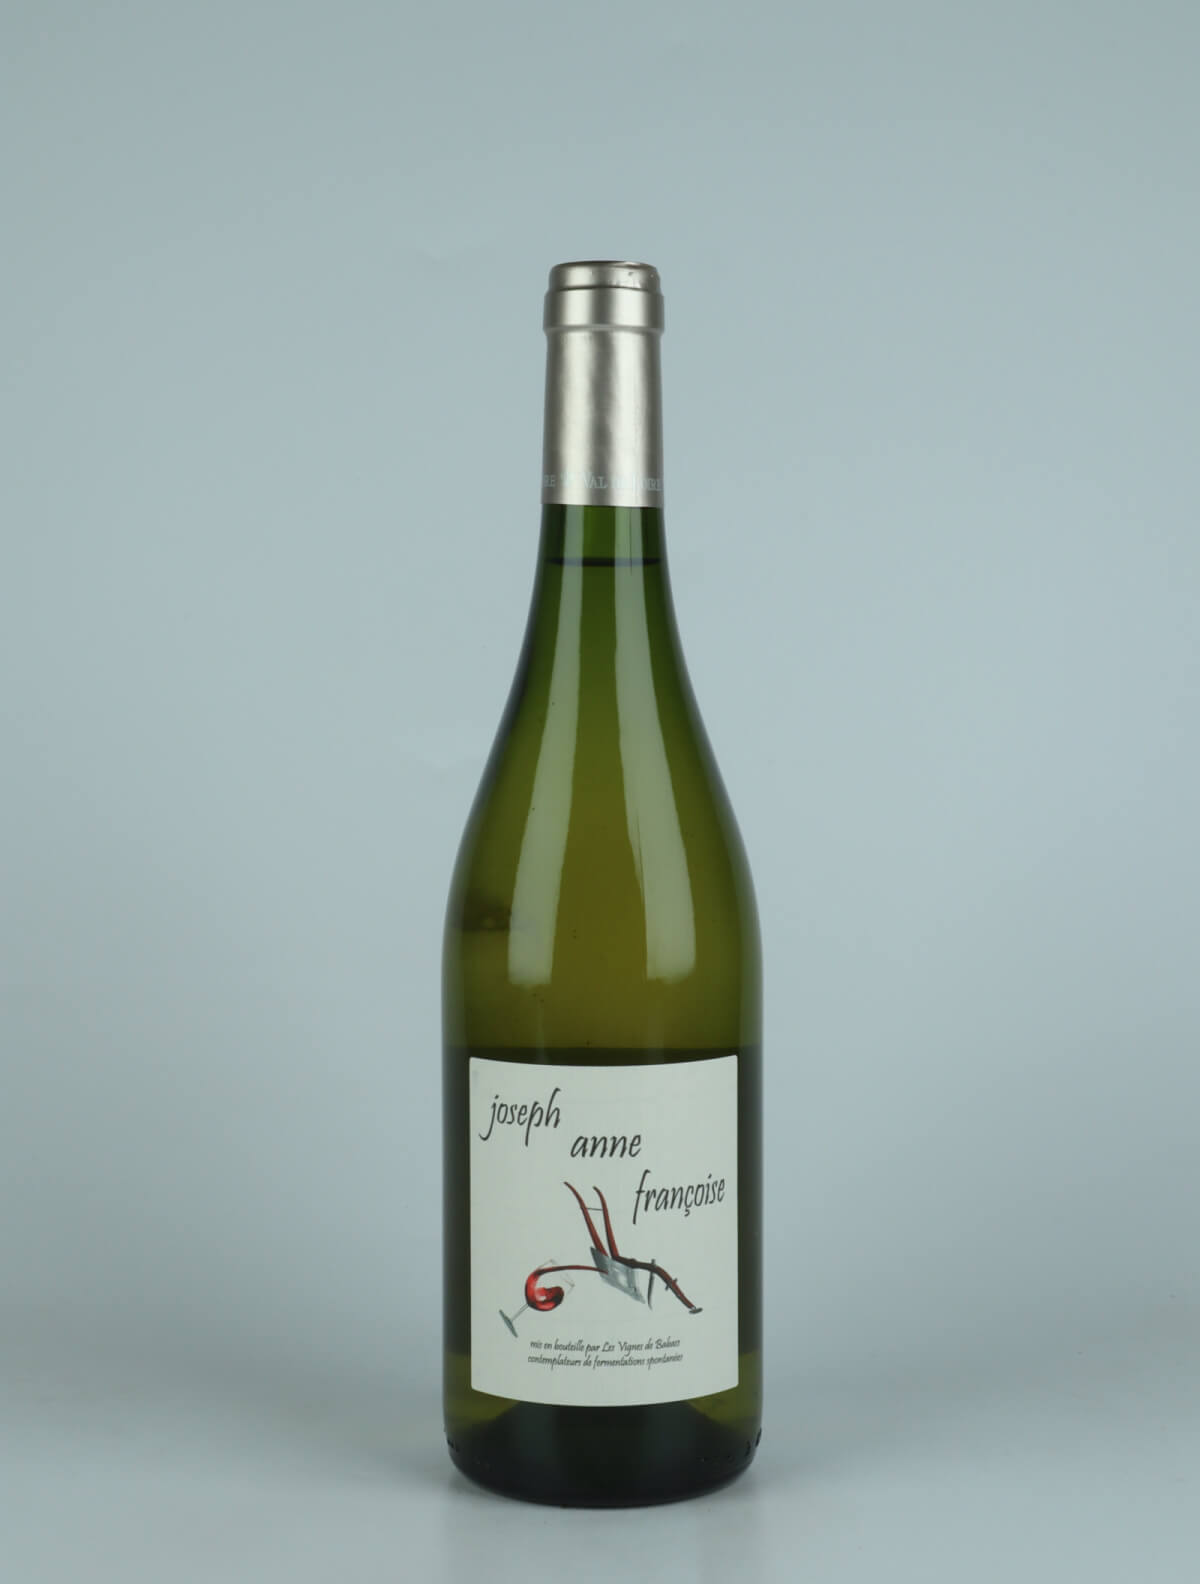 A bottle 2020 Joseph Anne Françoise White wine from Les Vignes de Babass, Loire in France